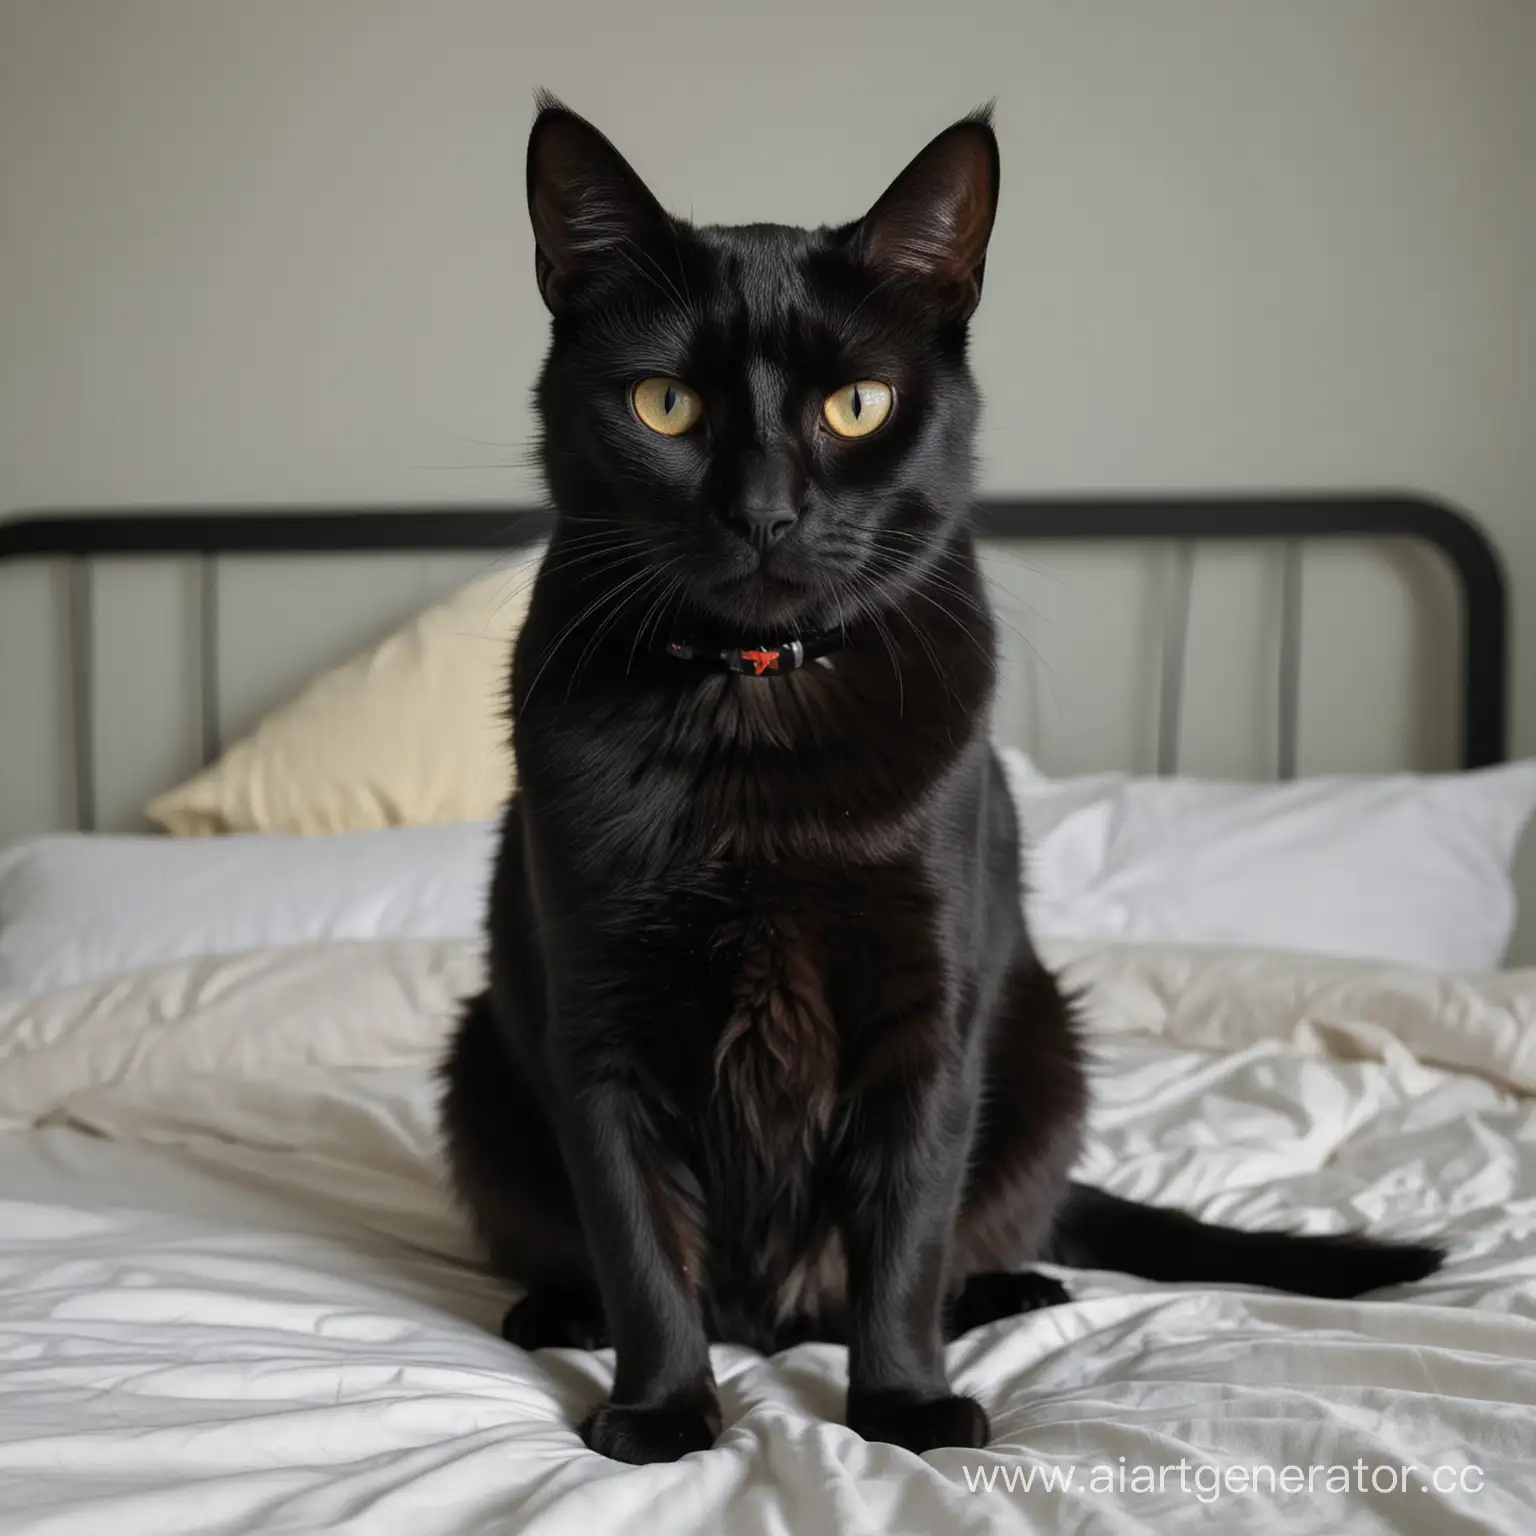 Черный кот сидящий на кровати, с высоким воротником, прикрытым раненым глазом, сидит и смотрит в камеру.